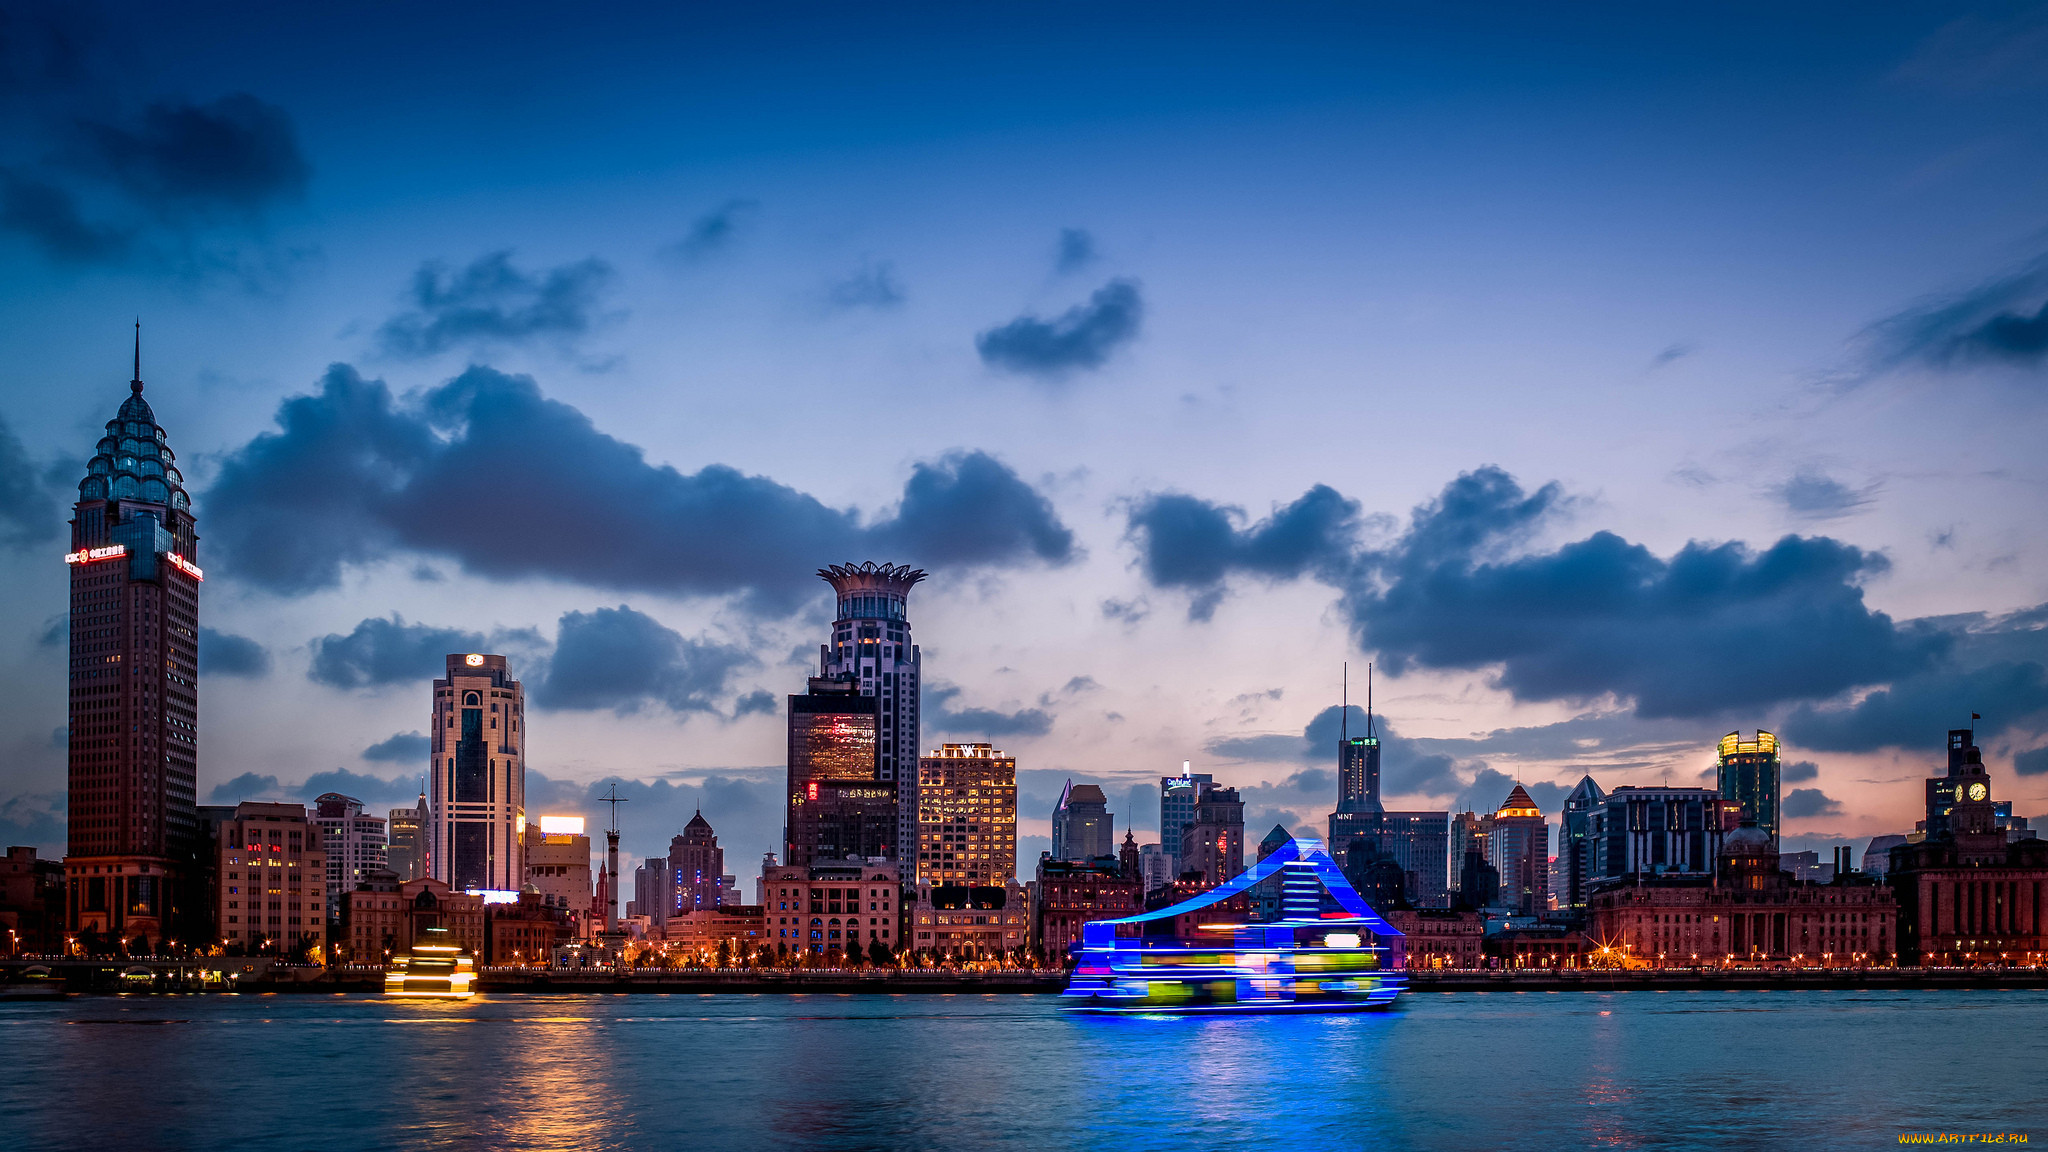 Фотографии размером 1024 2048 пикселей сохранили. Шанхай река. Город для ютуба. Шанхай обои. Ночной Шанхай.